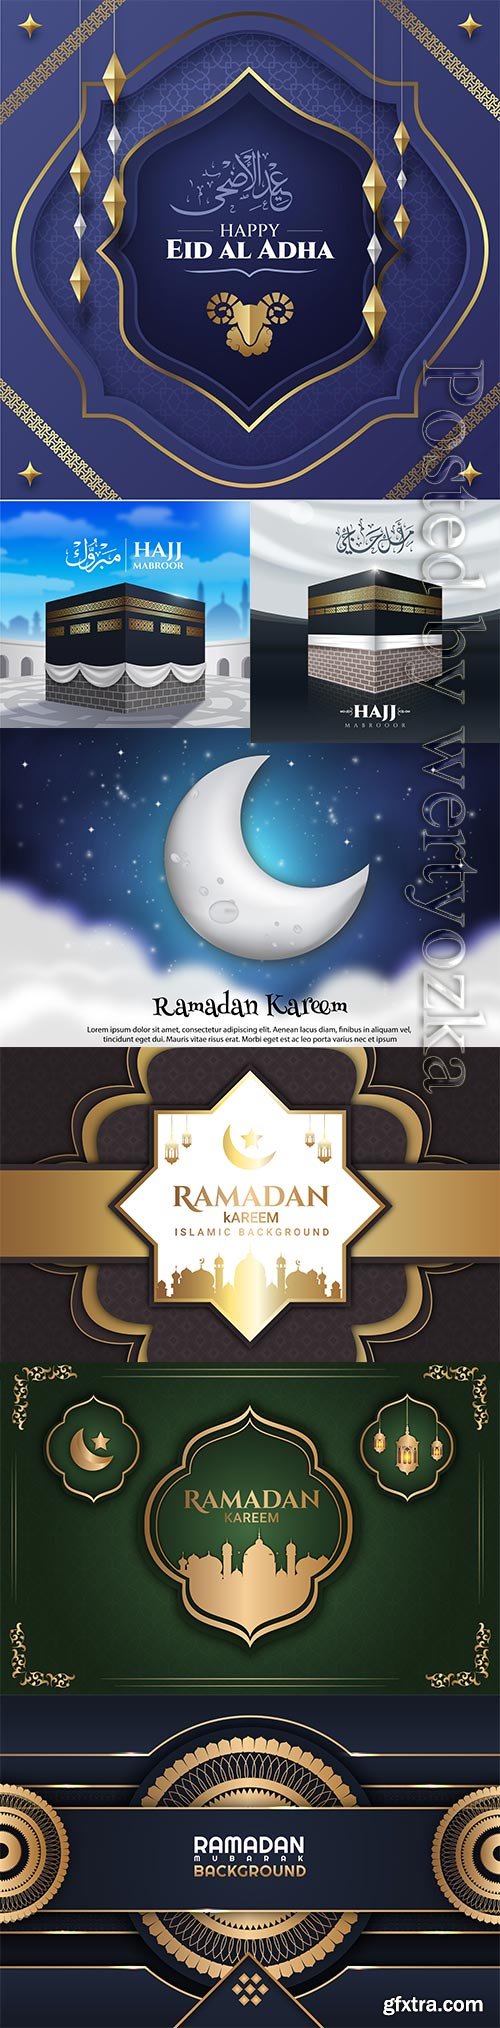 Ramadan kareem, islamic hajj pilgrimage vector illustration